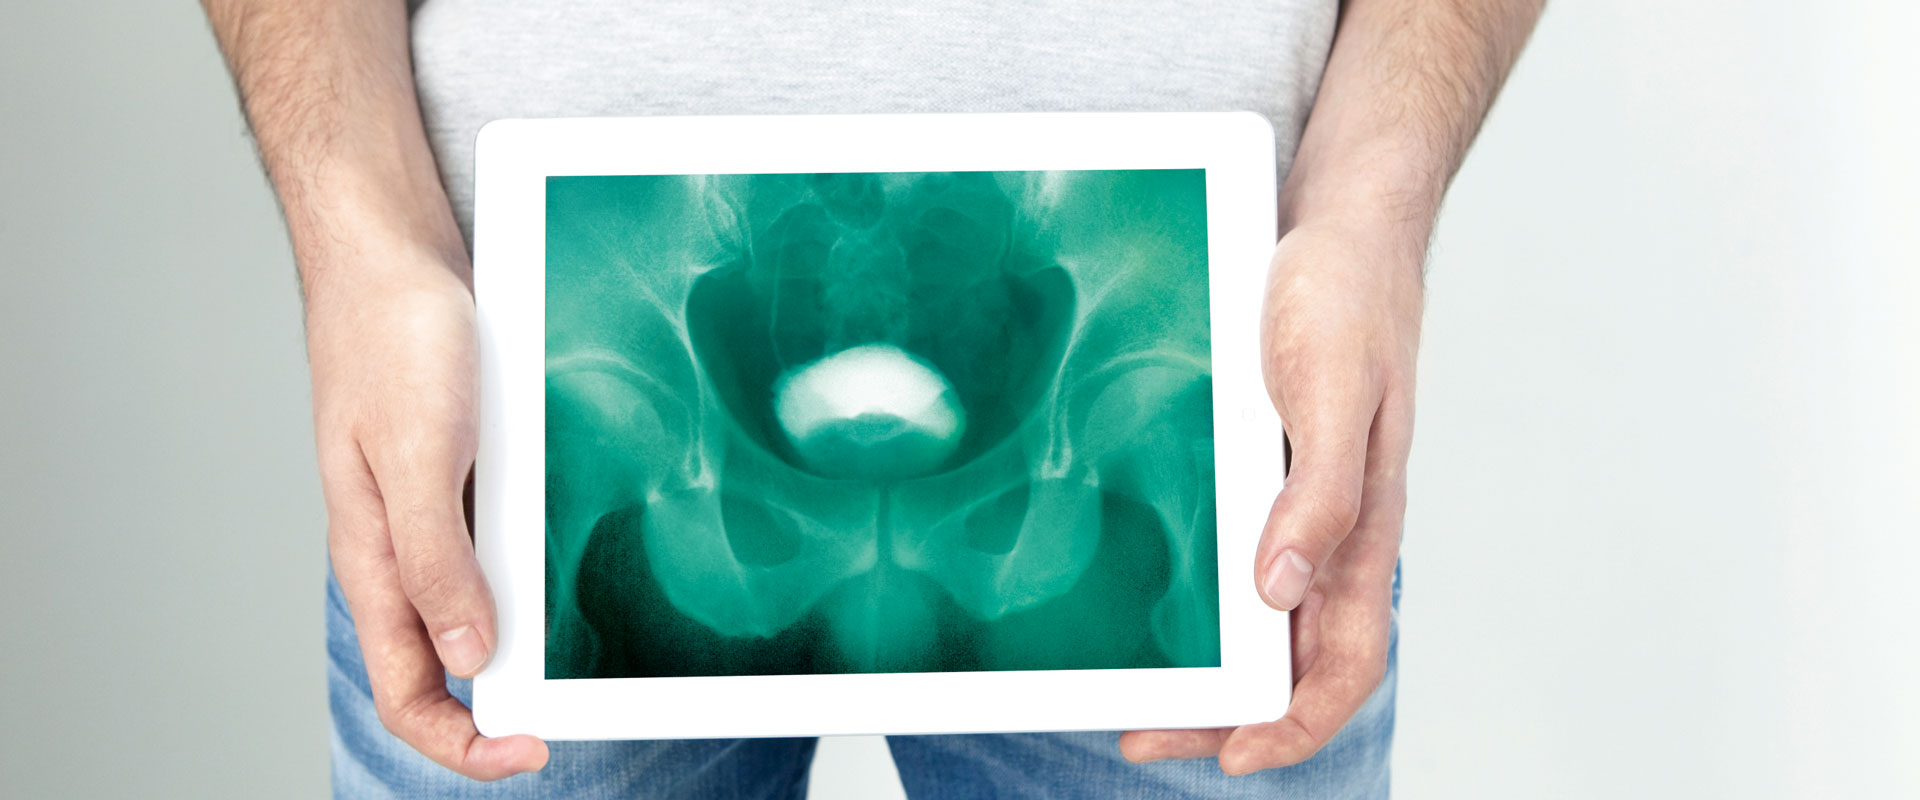 Röntgenbild von der Blase und Prostata